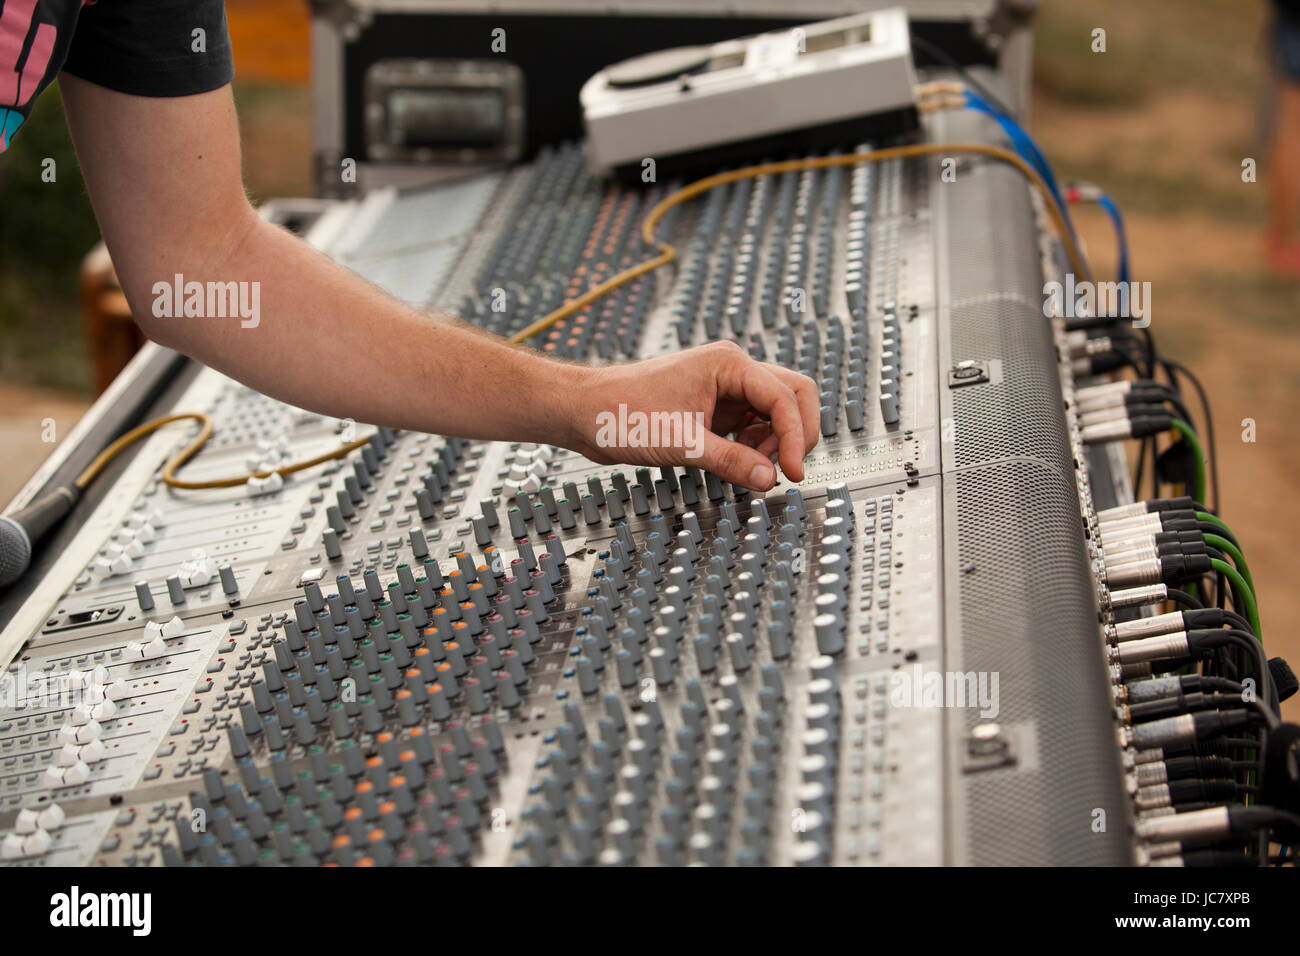 hand over music mixer Stock Photo